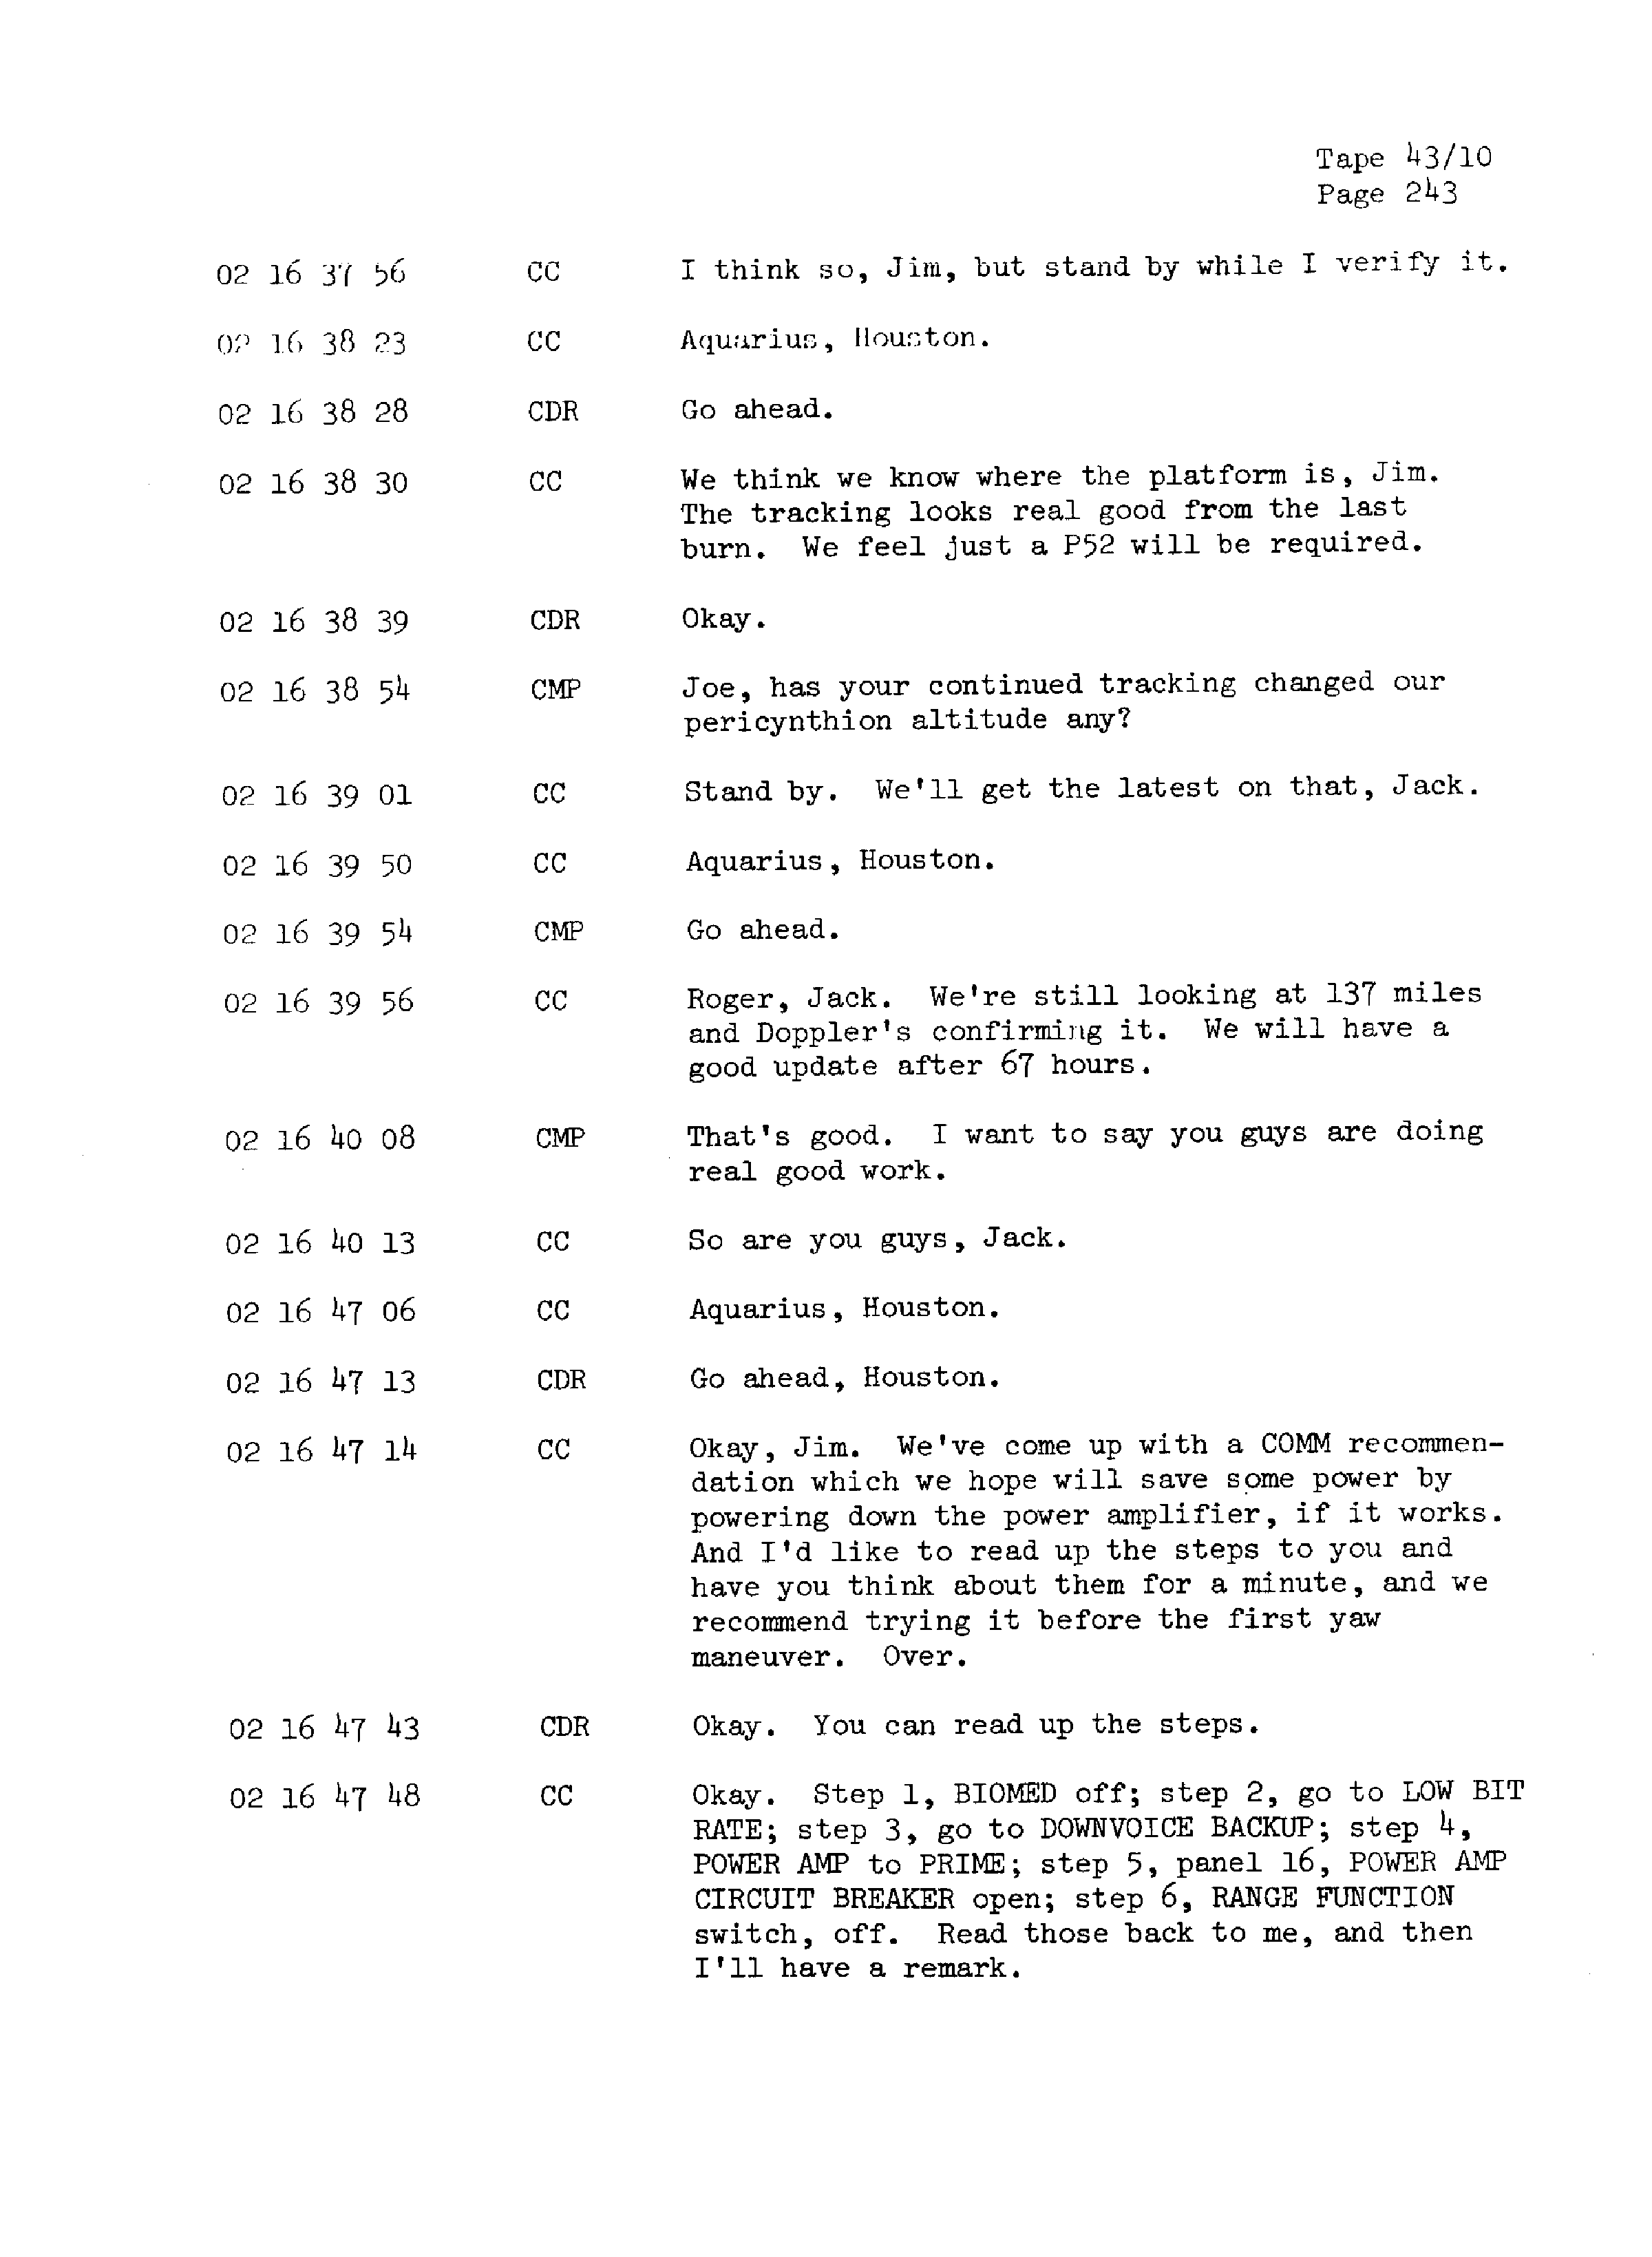 Page 250 of Apollo 13’s original transcript